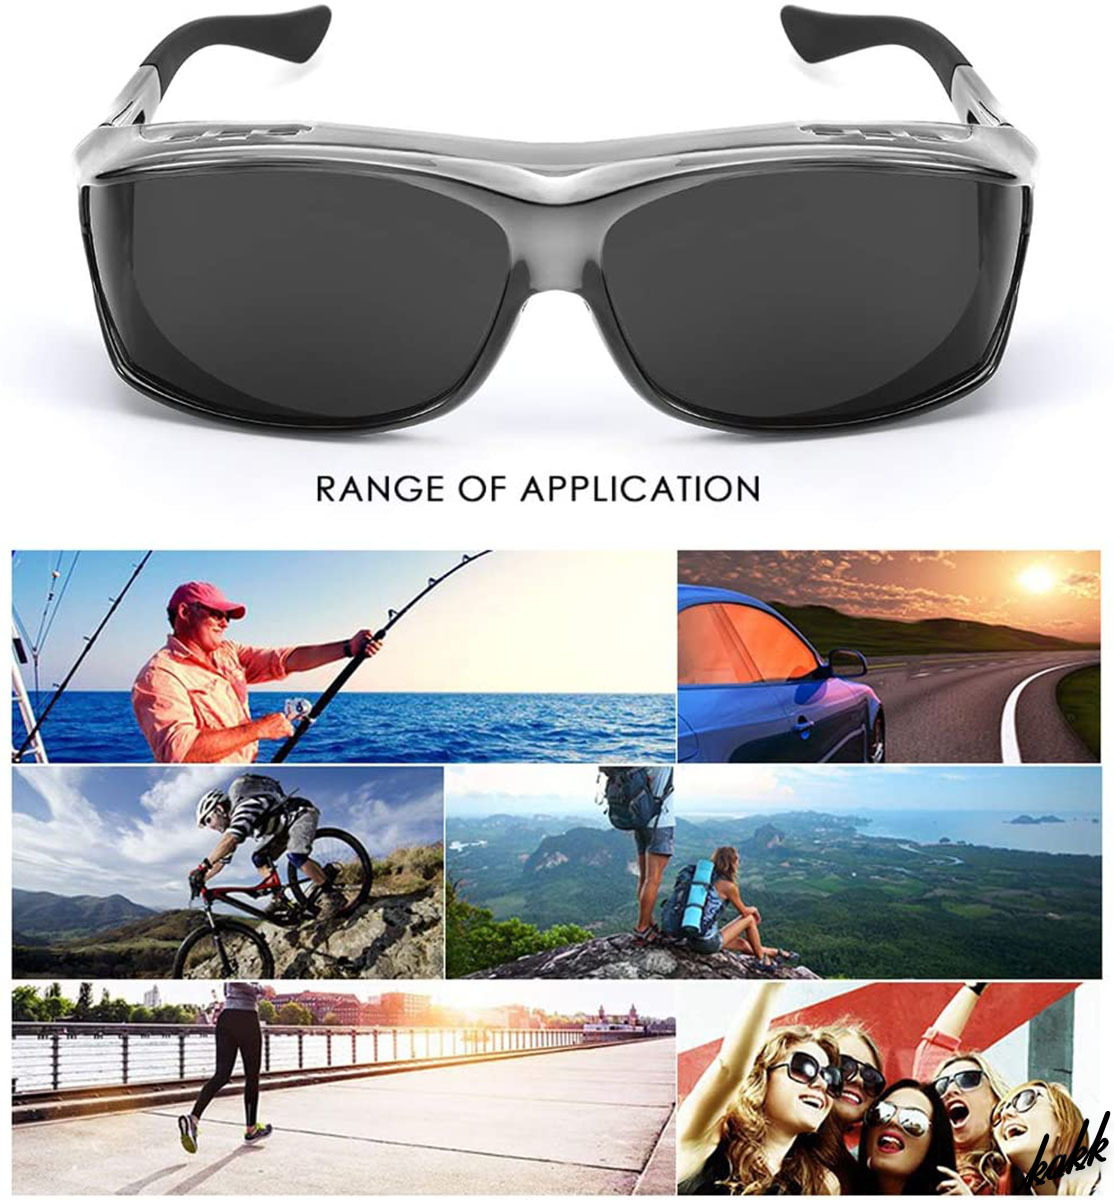 【メガネの上から装着】 オーバーサングラス 偏光グラス UV400 パノラマデザイン 日焼け防止 サイクリング ドライブ ランニング グレー